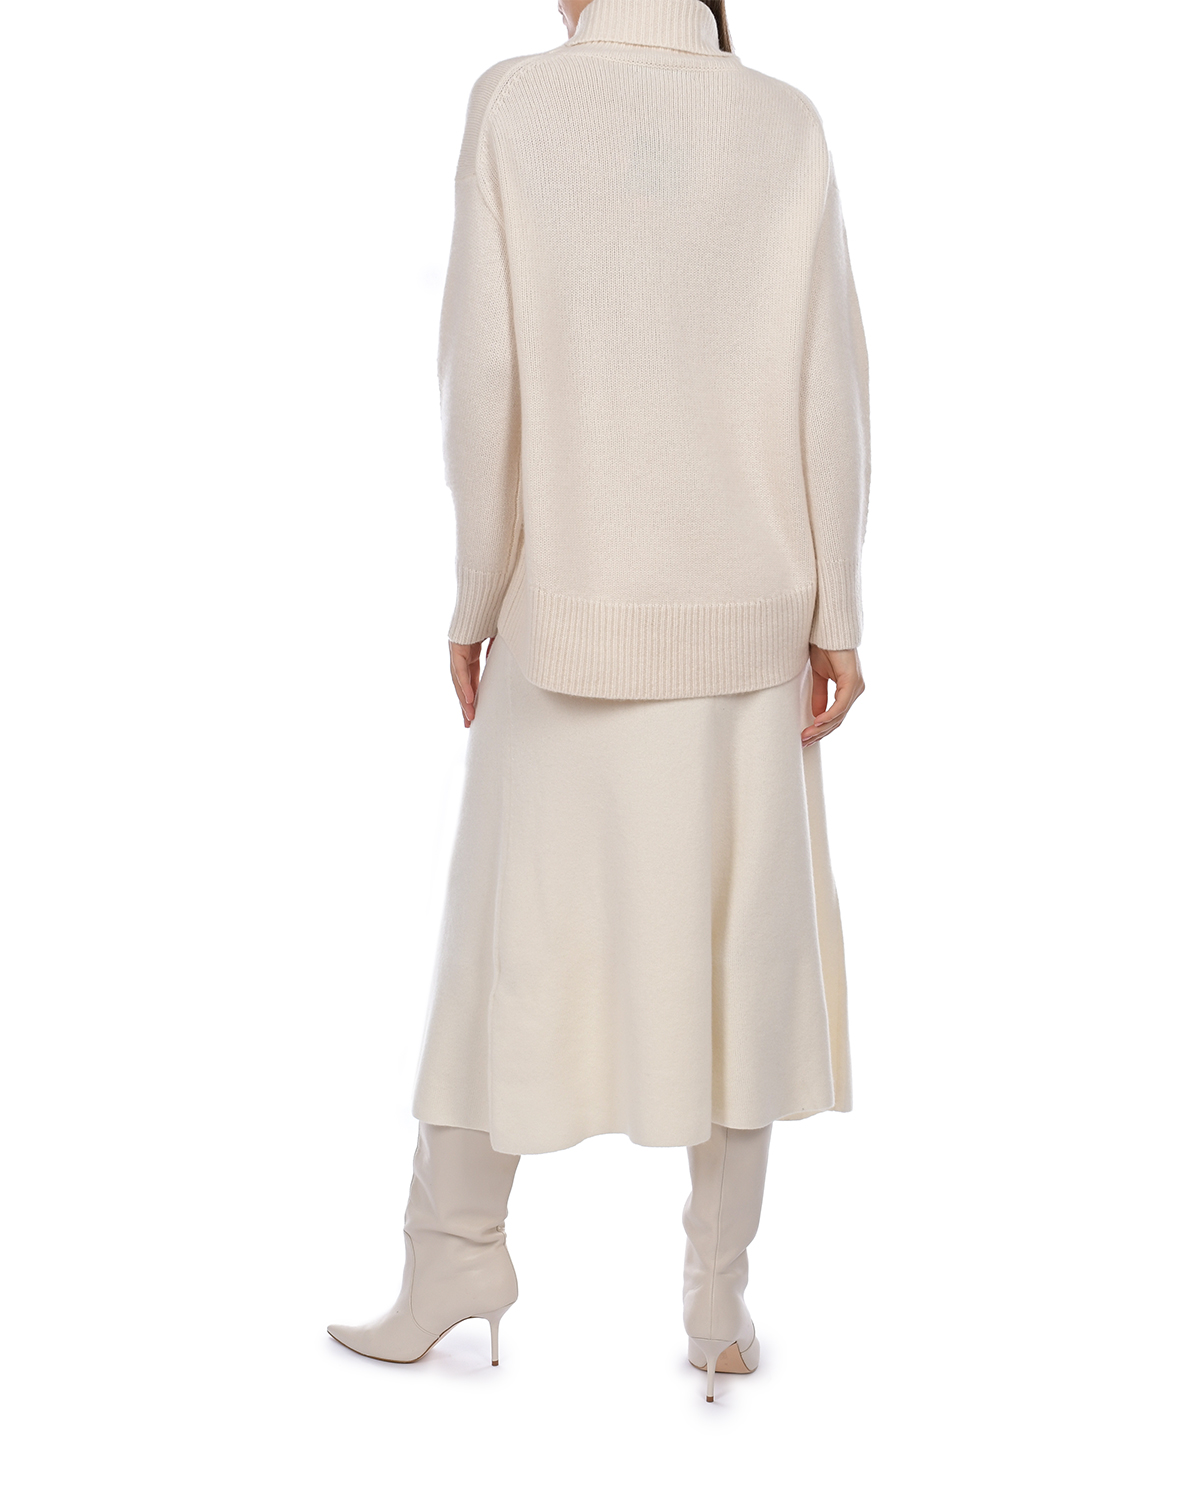 Кашемировая юбка молочного цвета Arch4, размер 40 - фото 4